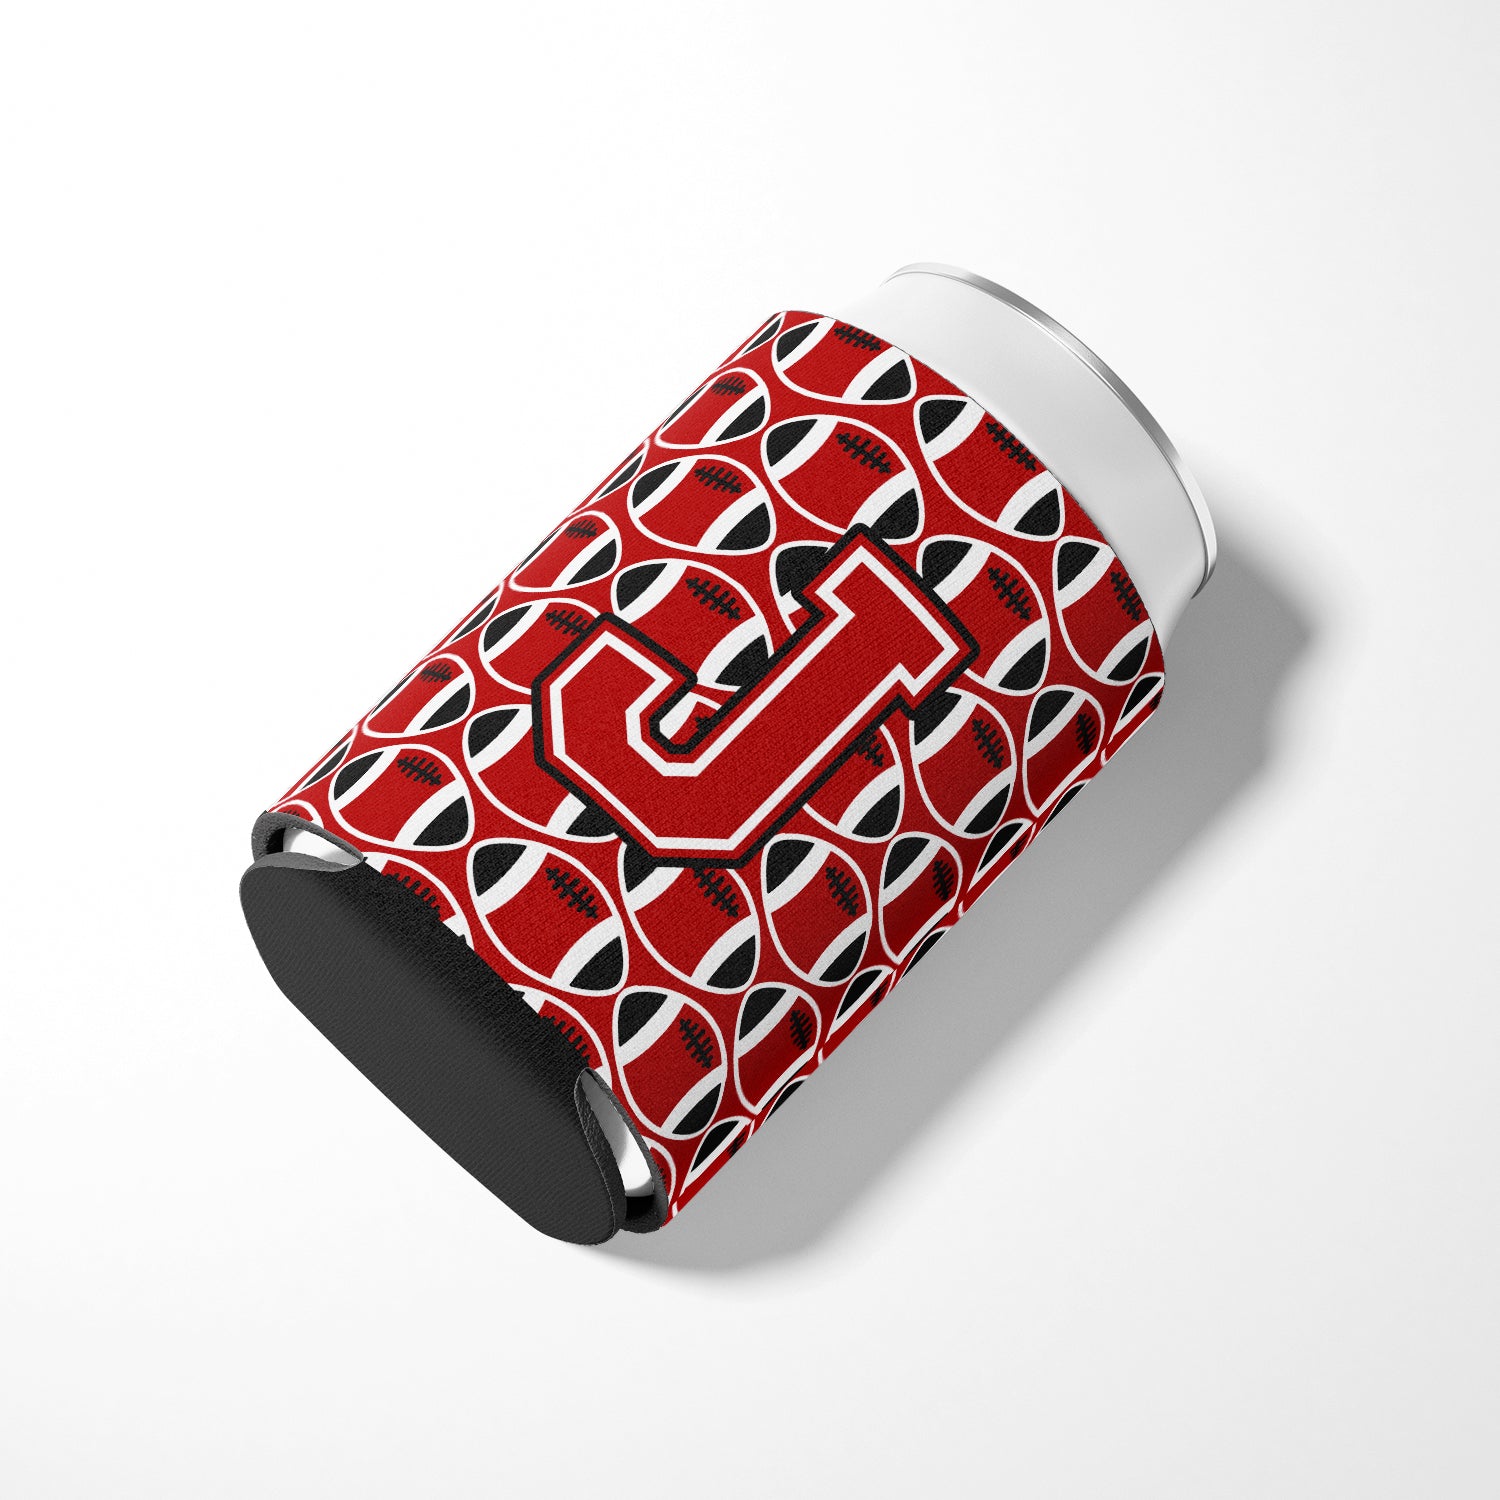 Letter J Football Red, Black and White Can or Bottle Hugger CJ1073-JCC.